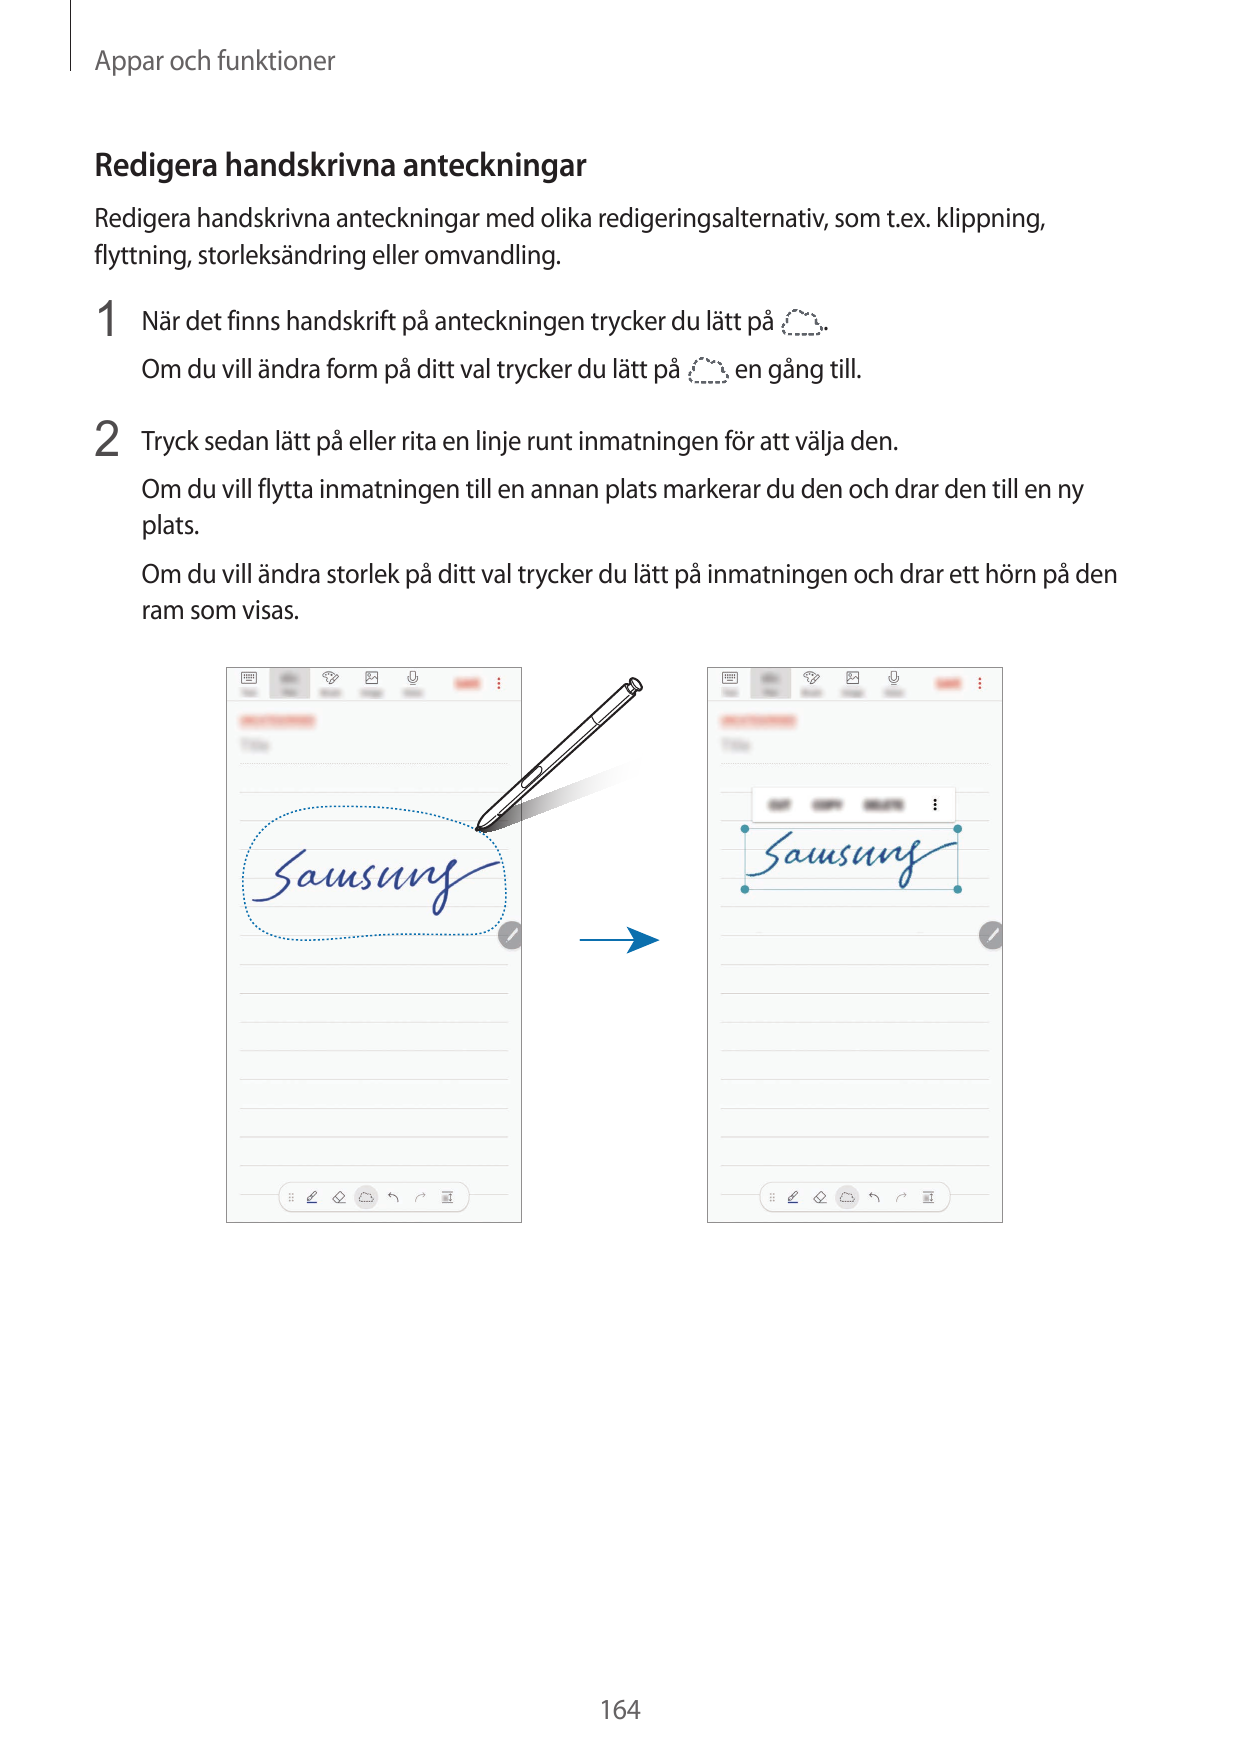 Appar och funktionerRedigera handskrivna anteckningarRedigera handskrivna anteckningar med olika redigeringsalternativ, som t.ex